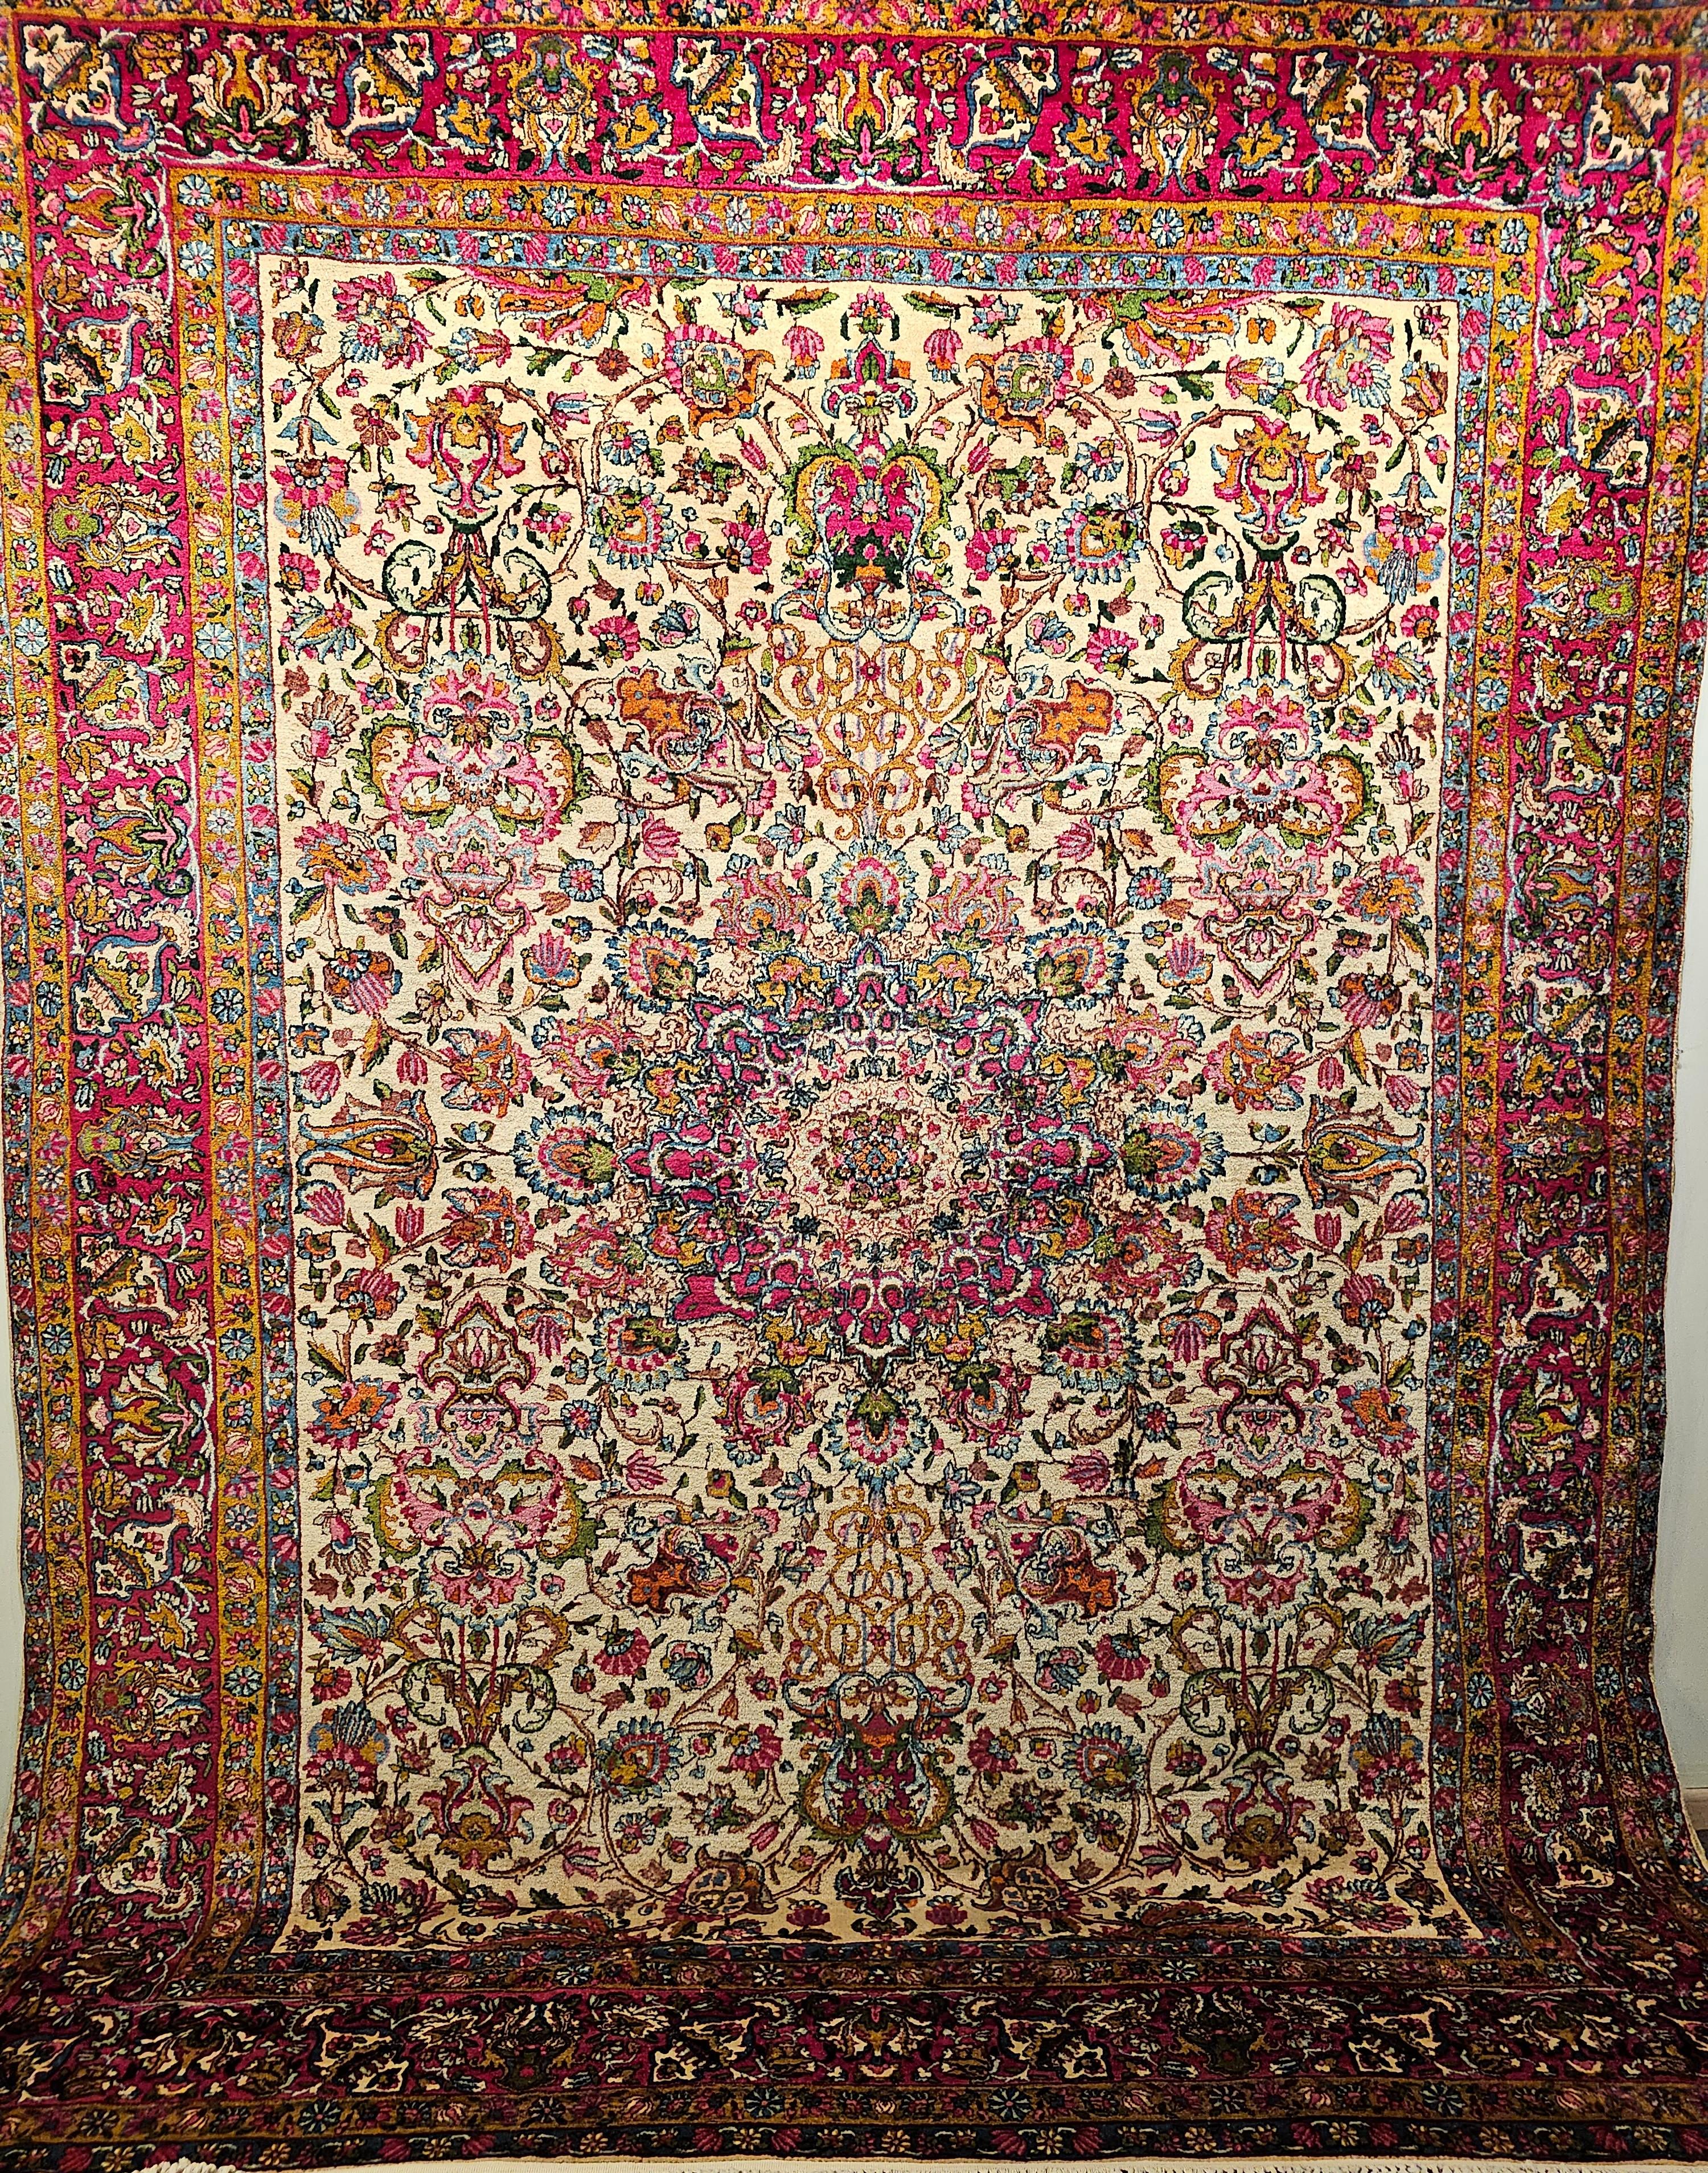 Erstaunlich schöner und farbenfroher persischer Kerman Lavar Teppich in Zimmergröße mit floralem Design auf elfenbeinfarbenem Hintergrund mit Designfarben in Rot, Rosa, Grün, Blau und vielen anderen.  Der Teppich hat ein wunderschönes Design und